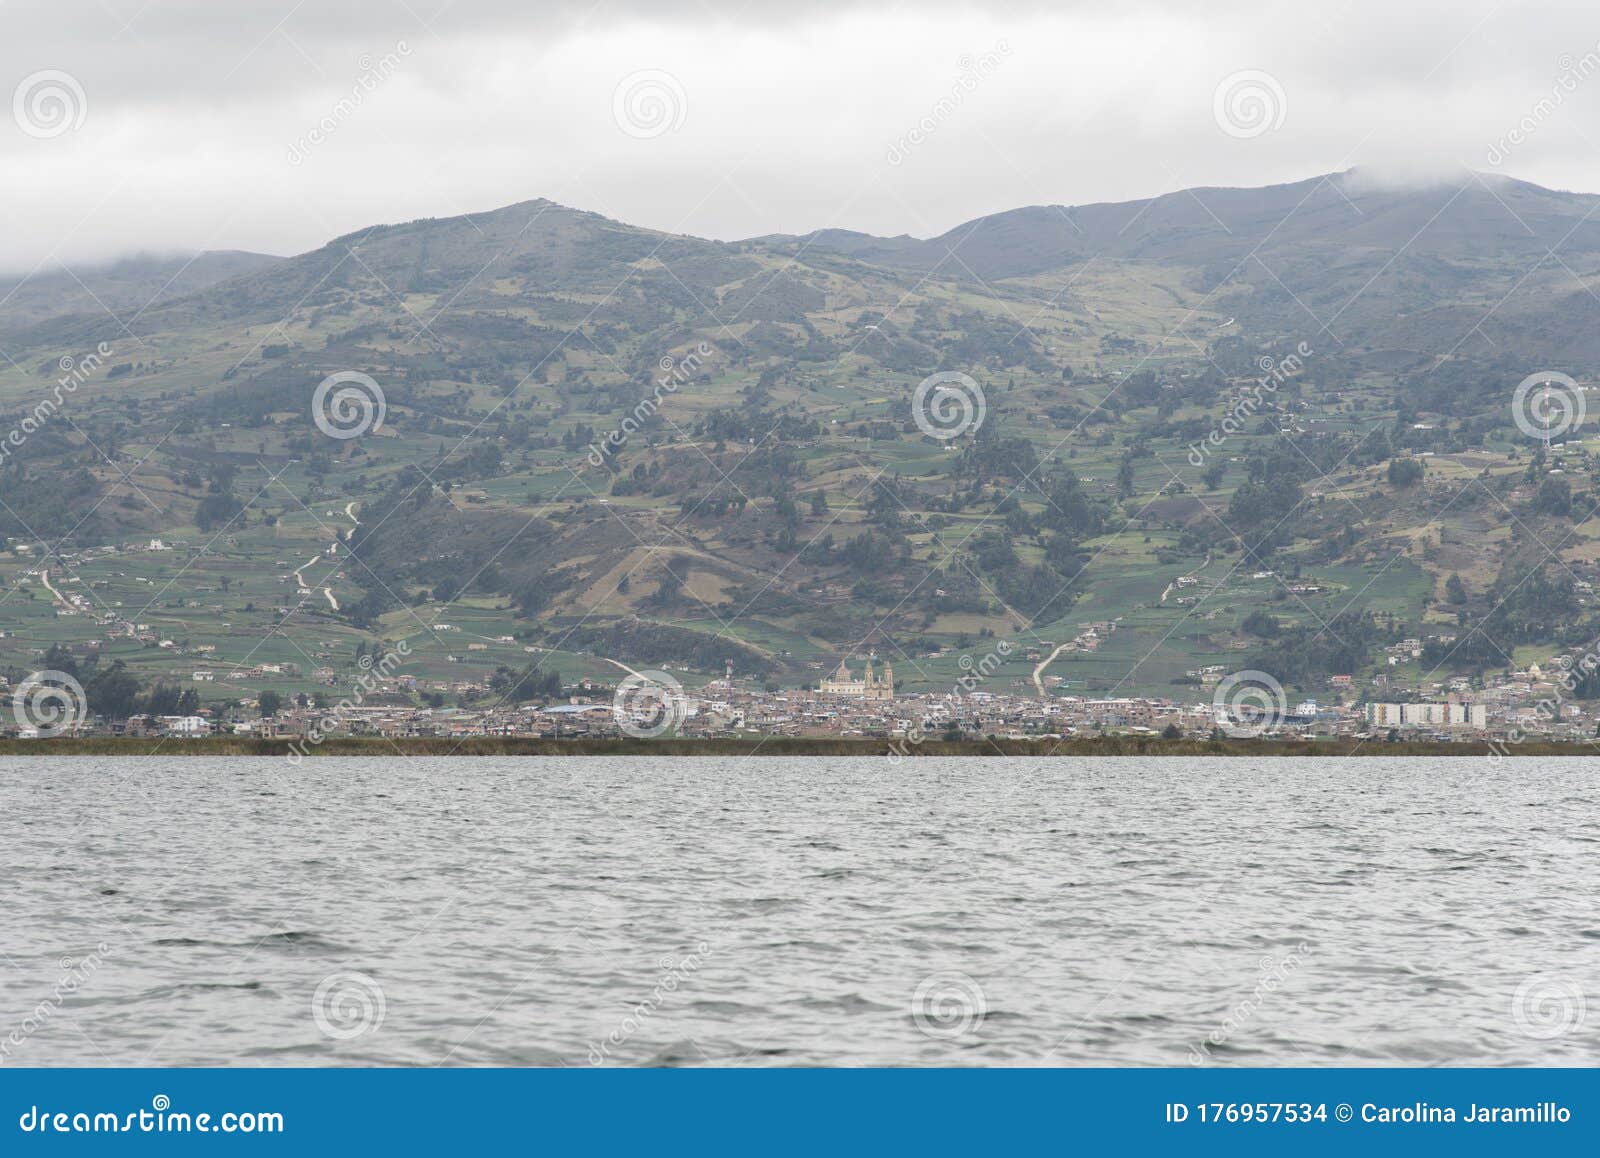 view of aquitania, boyaca, colombia, from the tota lake